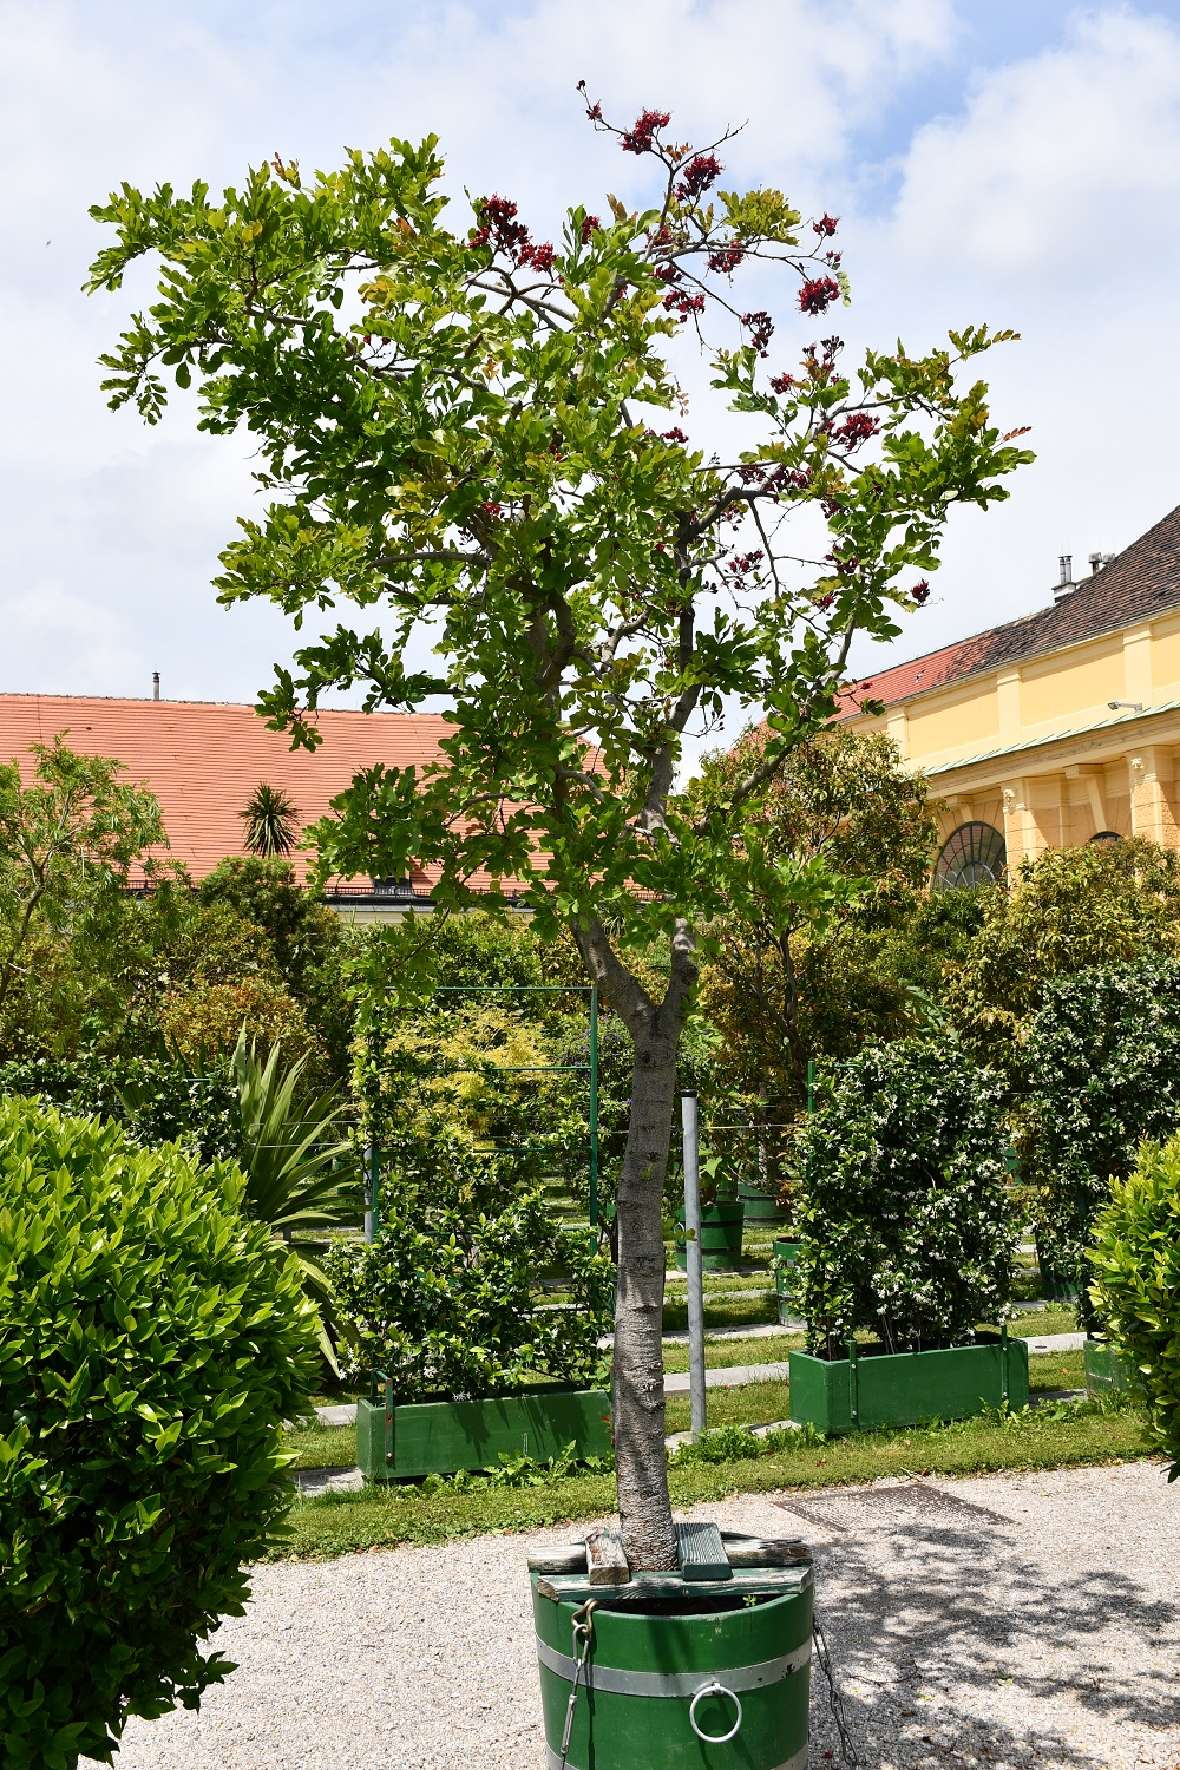 zu sehen ist ein Baum mit grünen Blättern und roten Blüten in einem grünen Pflanzgefäß aus Holz